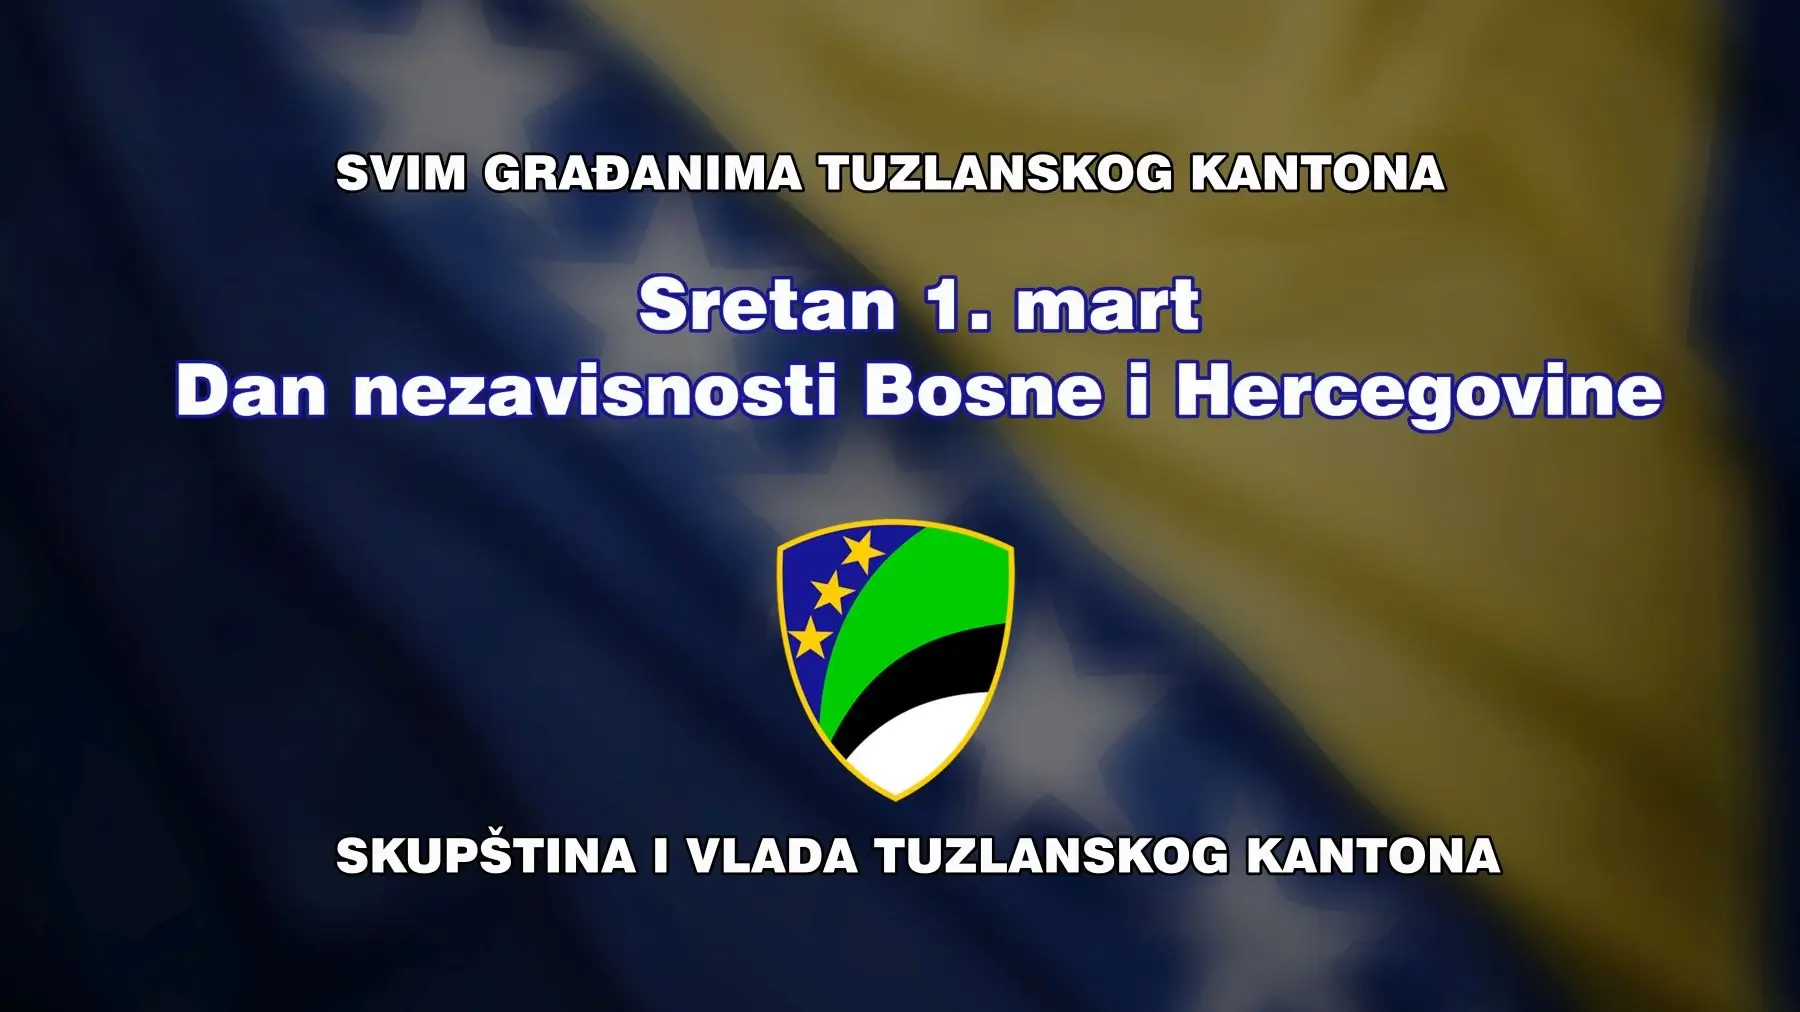 Javna čestitka u povodu Dana nezavisnosti Bosne i Hercegovine